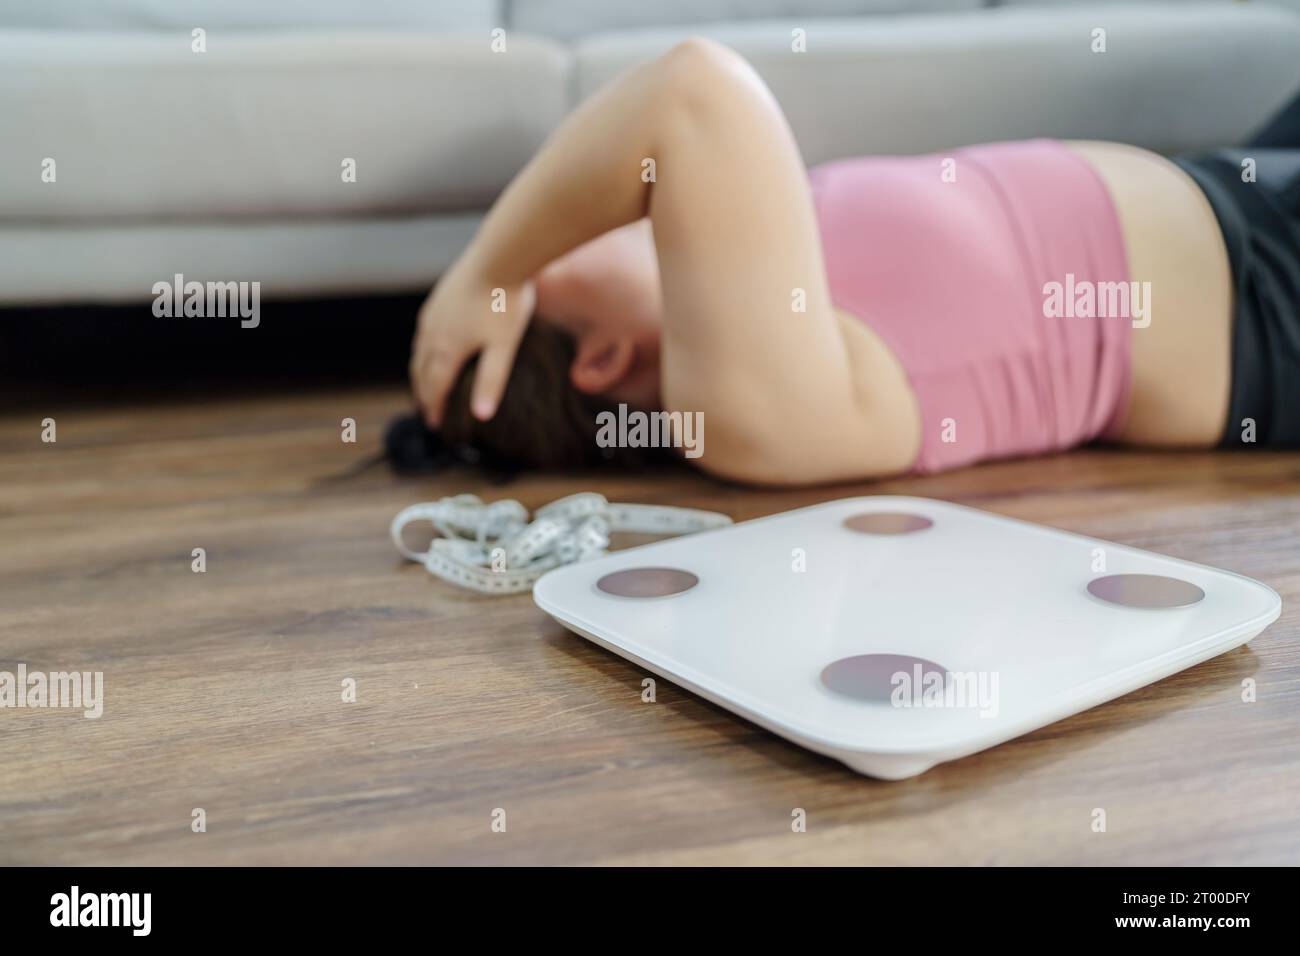 Fettleibige Frau mit Fett gestört gelangweilt von Diät Gewichtsverlust failÂ Fett Diät und Waage traurige asiatische Frau auf Gewichtswaage zu Hause Gewicht Stockfoto